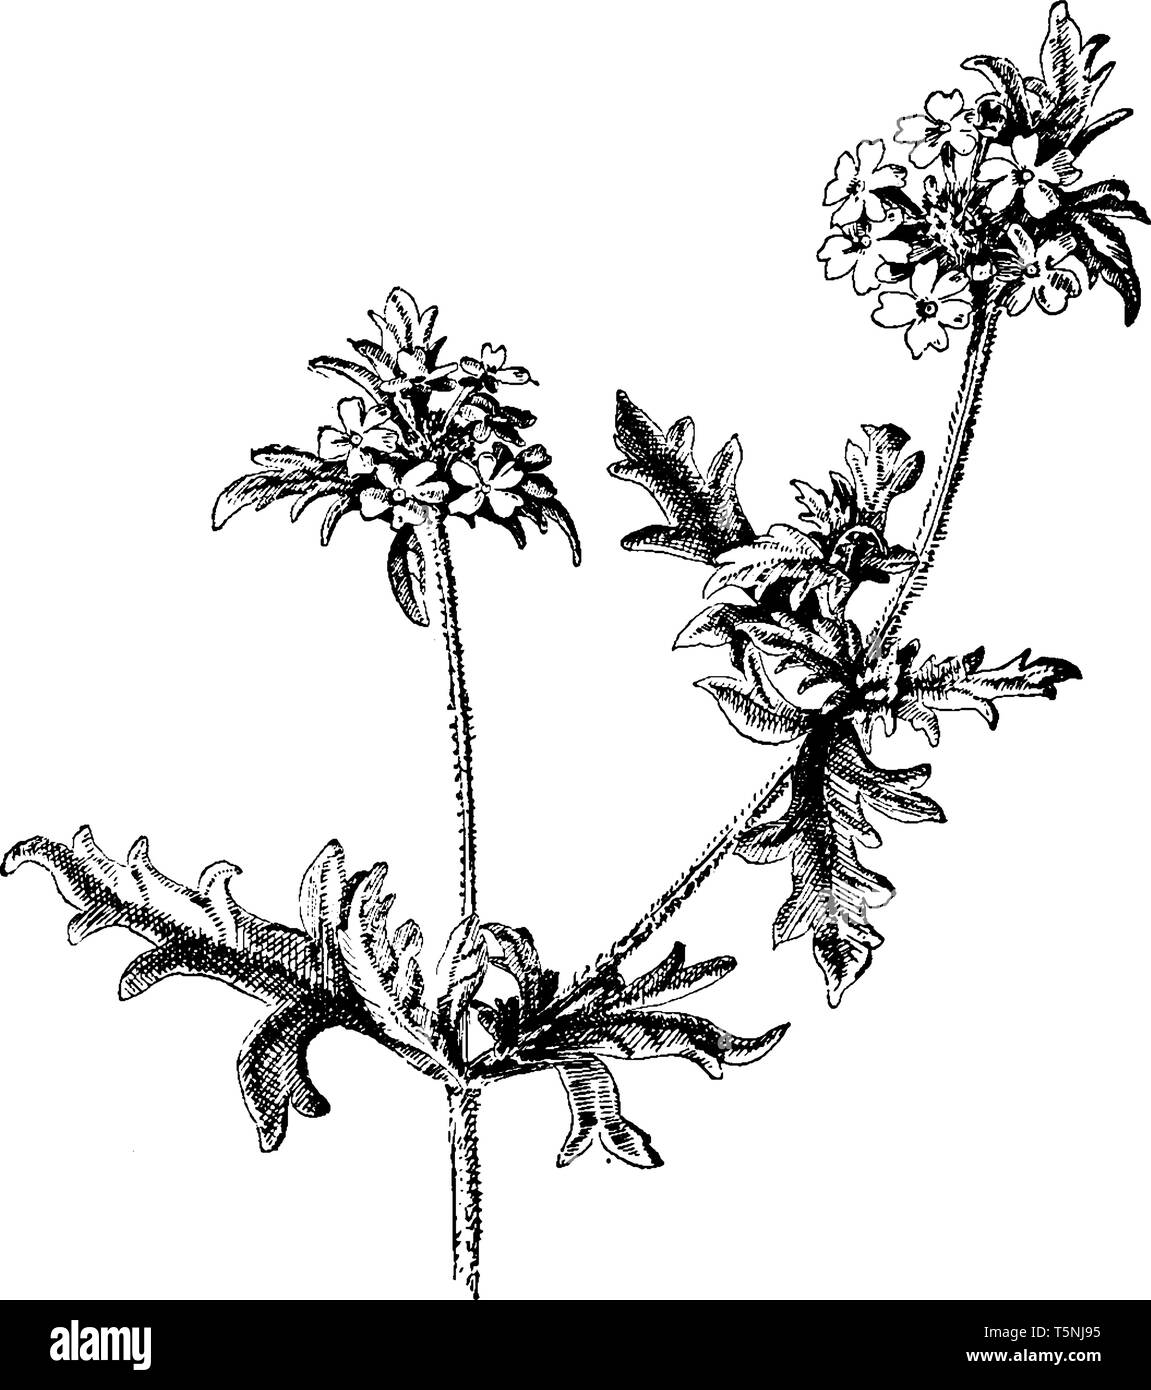 Ein Bild von Verbena Canadensis Blumen allgemein als Tramp Verbene, Eisenkraut, vintage Rosa Zeichnung oder Gravur Abbildung bekannt. Stock Vektor